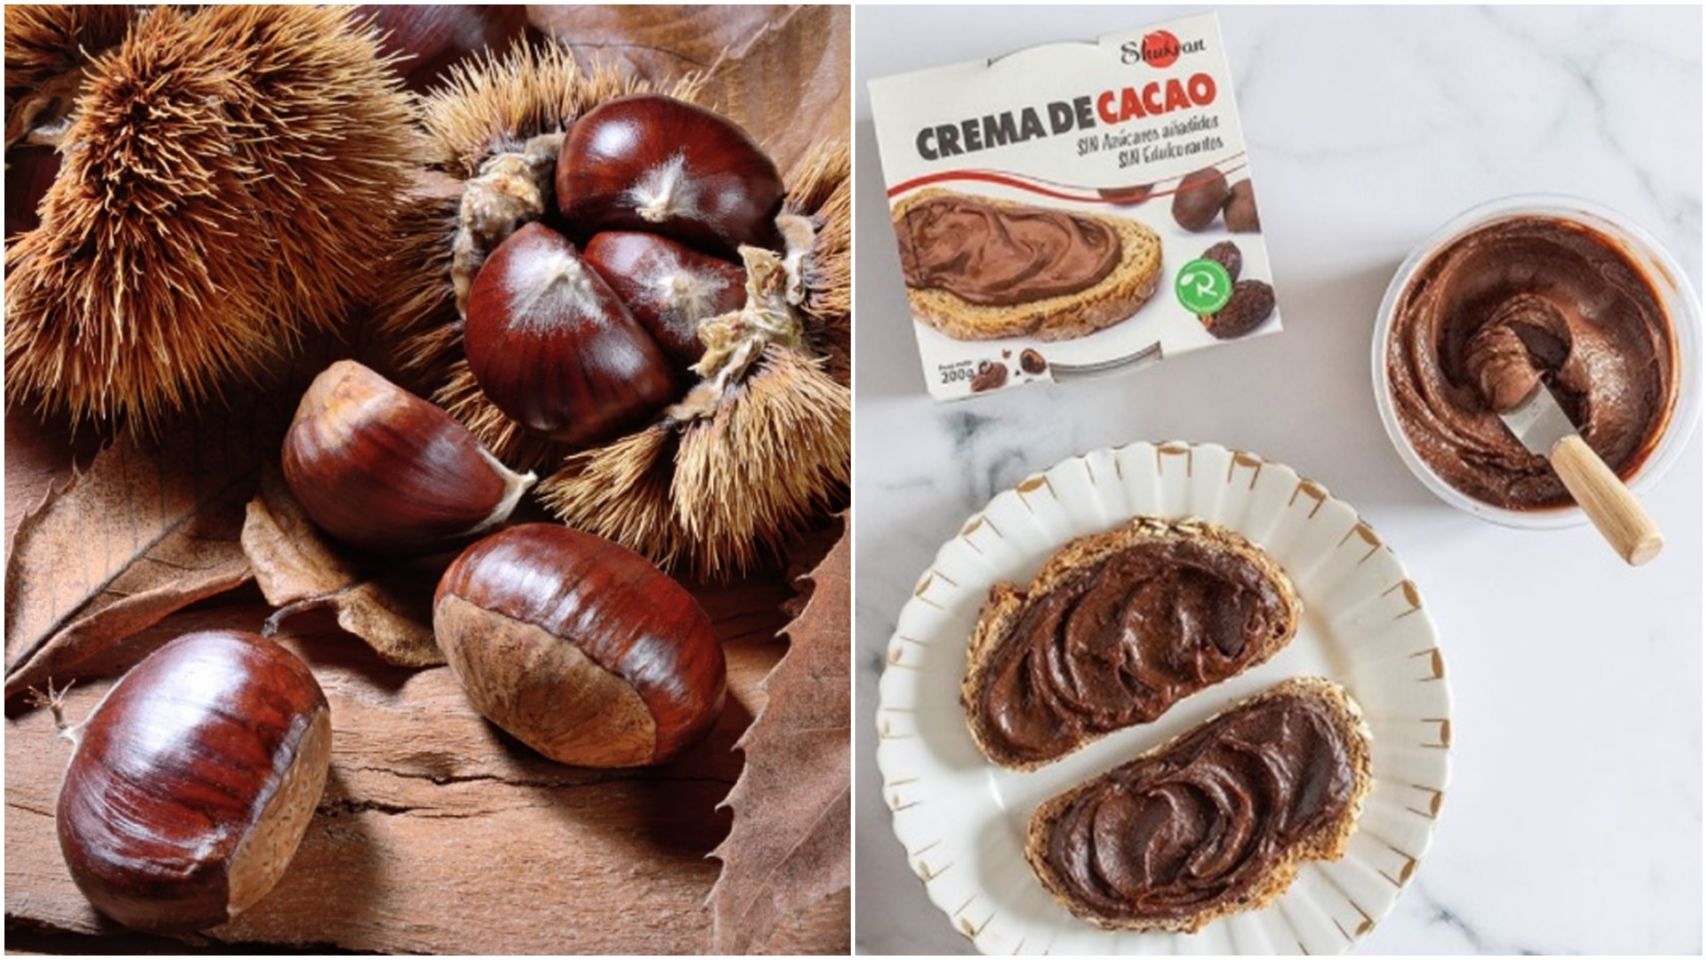 Las castañas de Galicia son uno de los ingredientes de la nueva crema de cacao de 'Realfooding'.